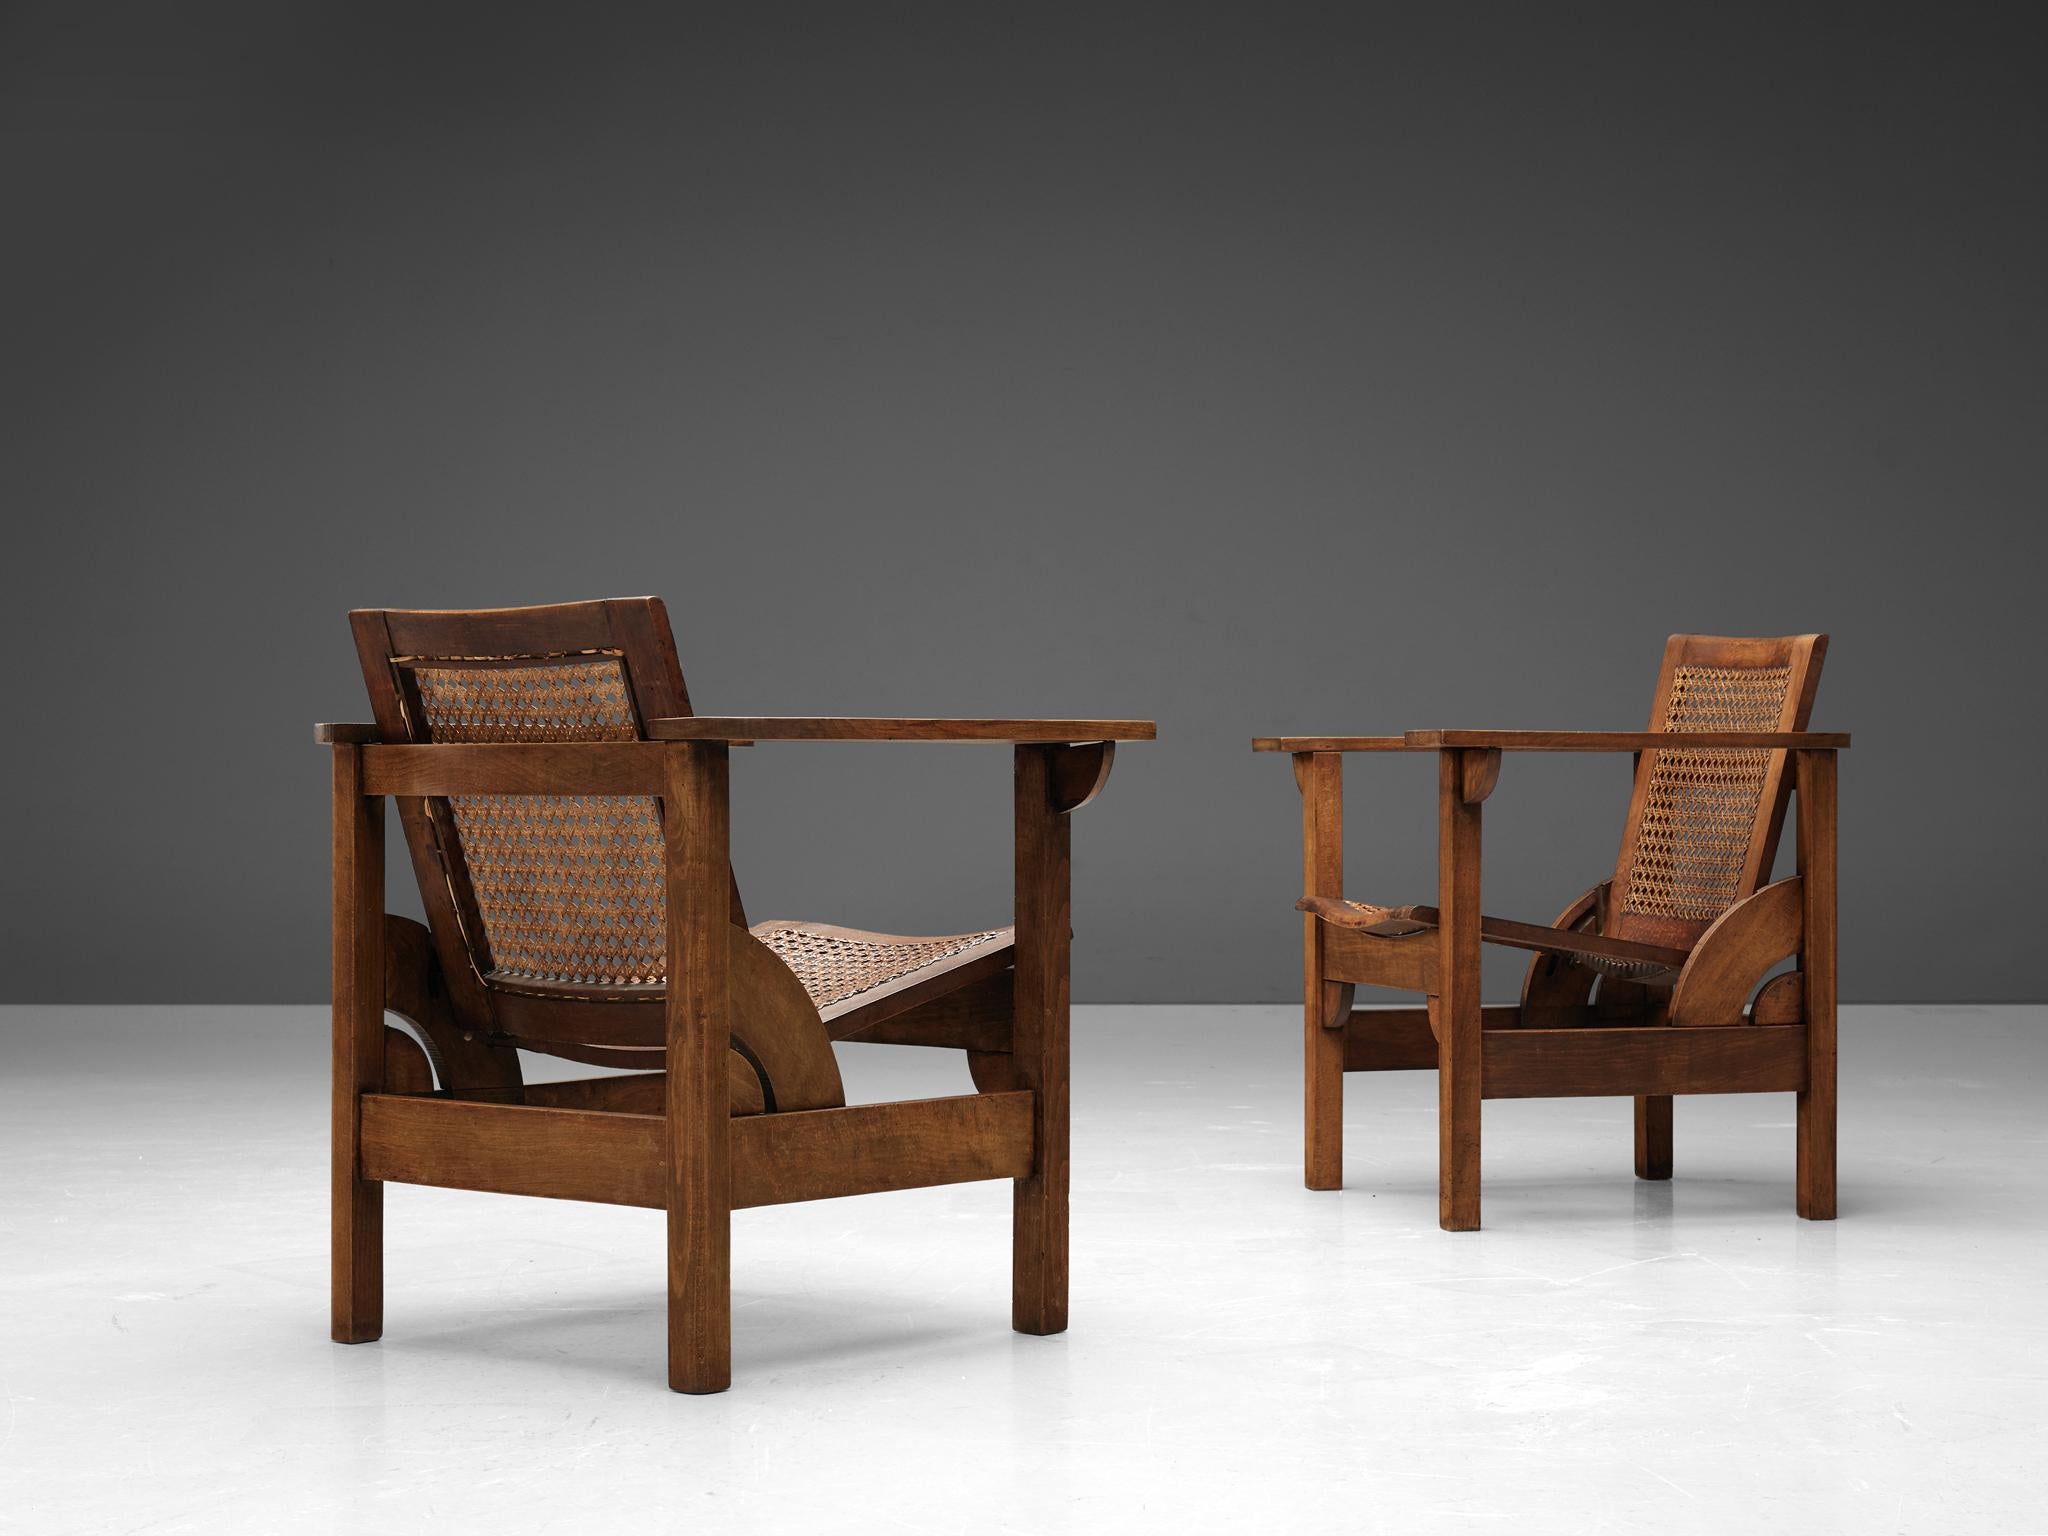 Pierre Dariel, Fauteuils 'Hendaye', hêtre, cannage, France, années 1930. 

Robuste chaise longue modèle Hendaye conçue par Pierre Dariel dans les années 1930. L'ossature en bois est exécutée en hêtre, tandis que l'assise et le dossier sont en